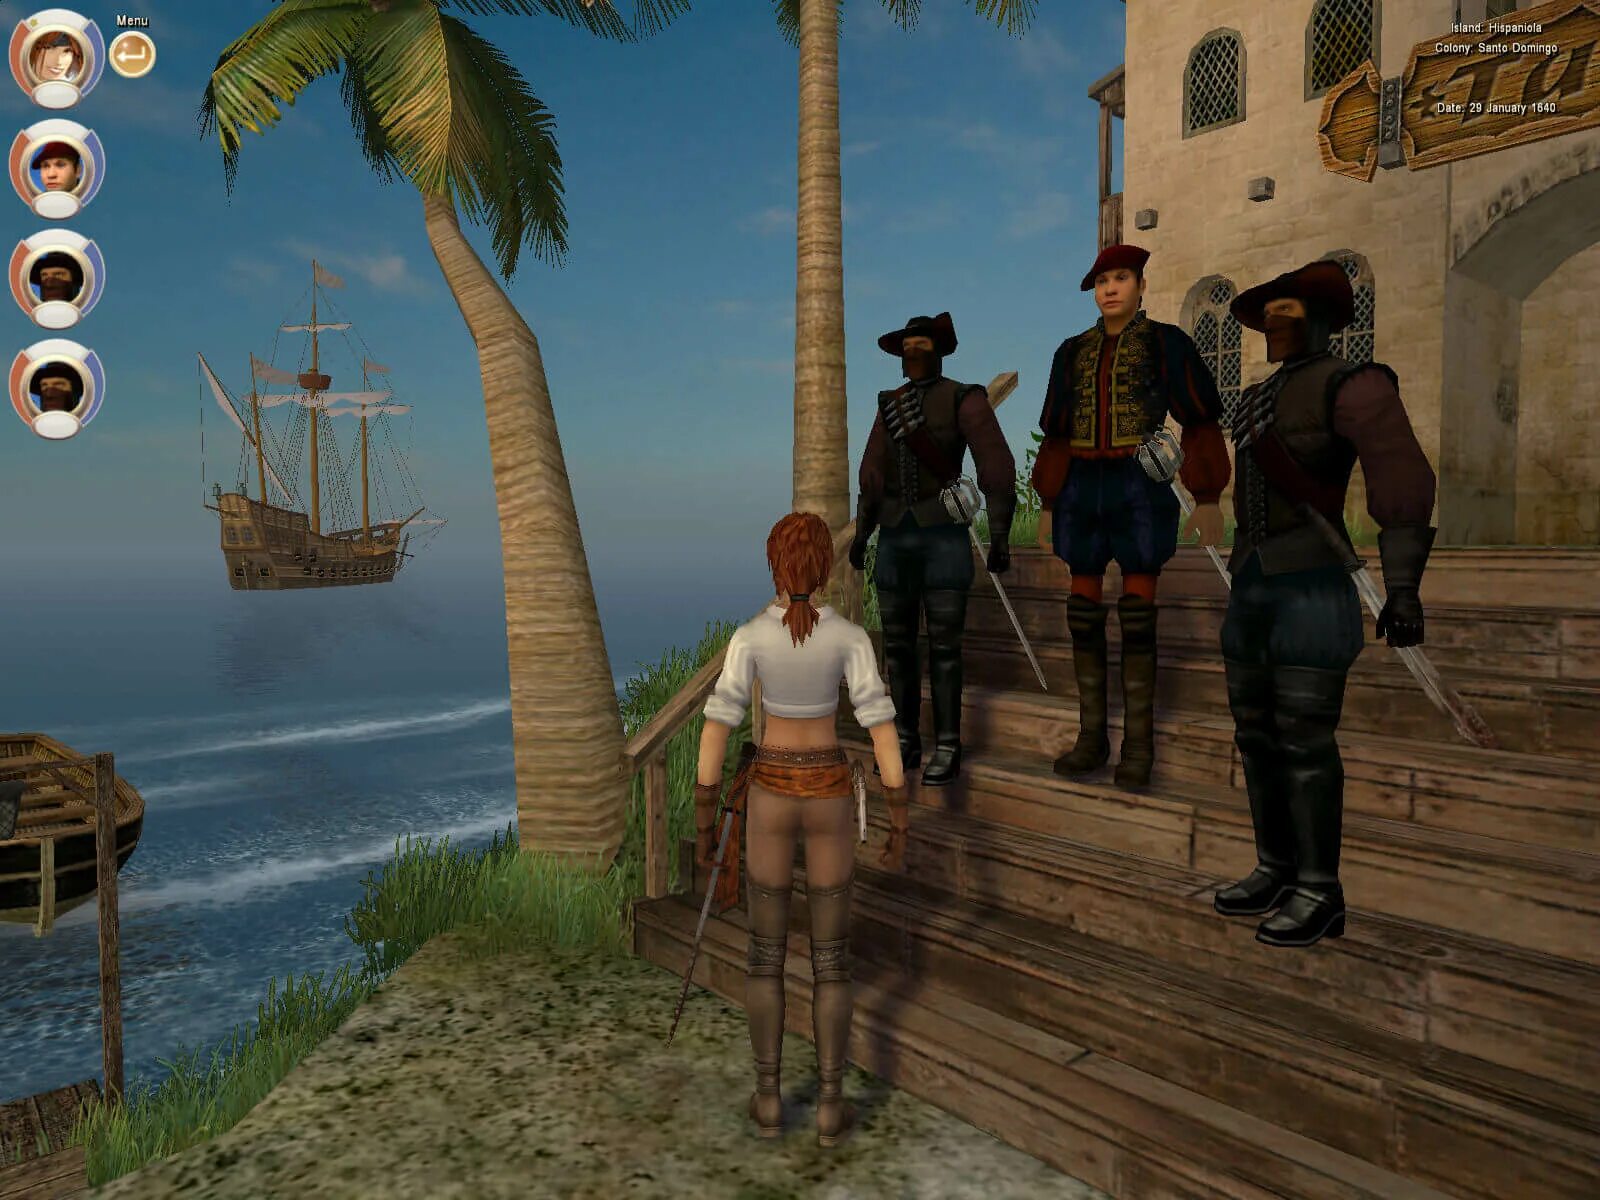 Корсары 3 пираты Карибского моря. Корсары III (2005). Age of Pirates: Caribbean Tales игра. Натаниэль Хаук Корсары 2. Игра пираты восстановить